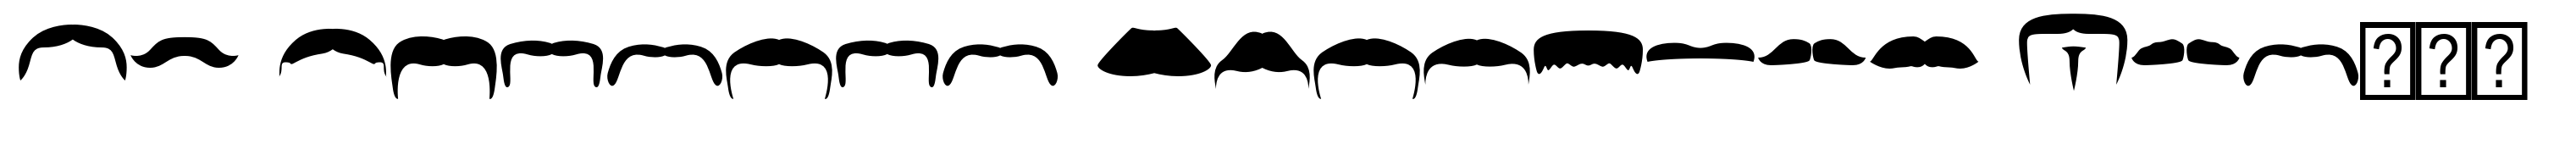 FT Bronson Mustache Dingbats